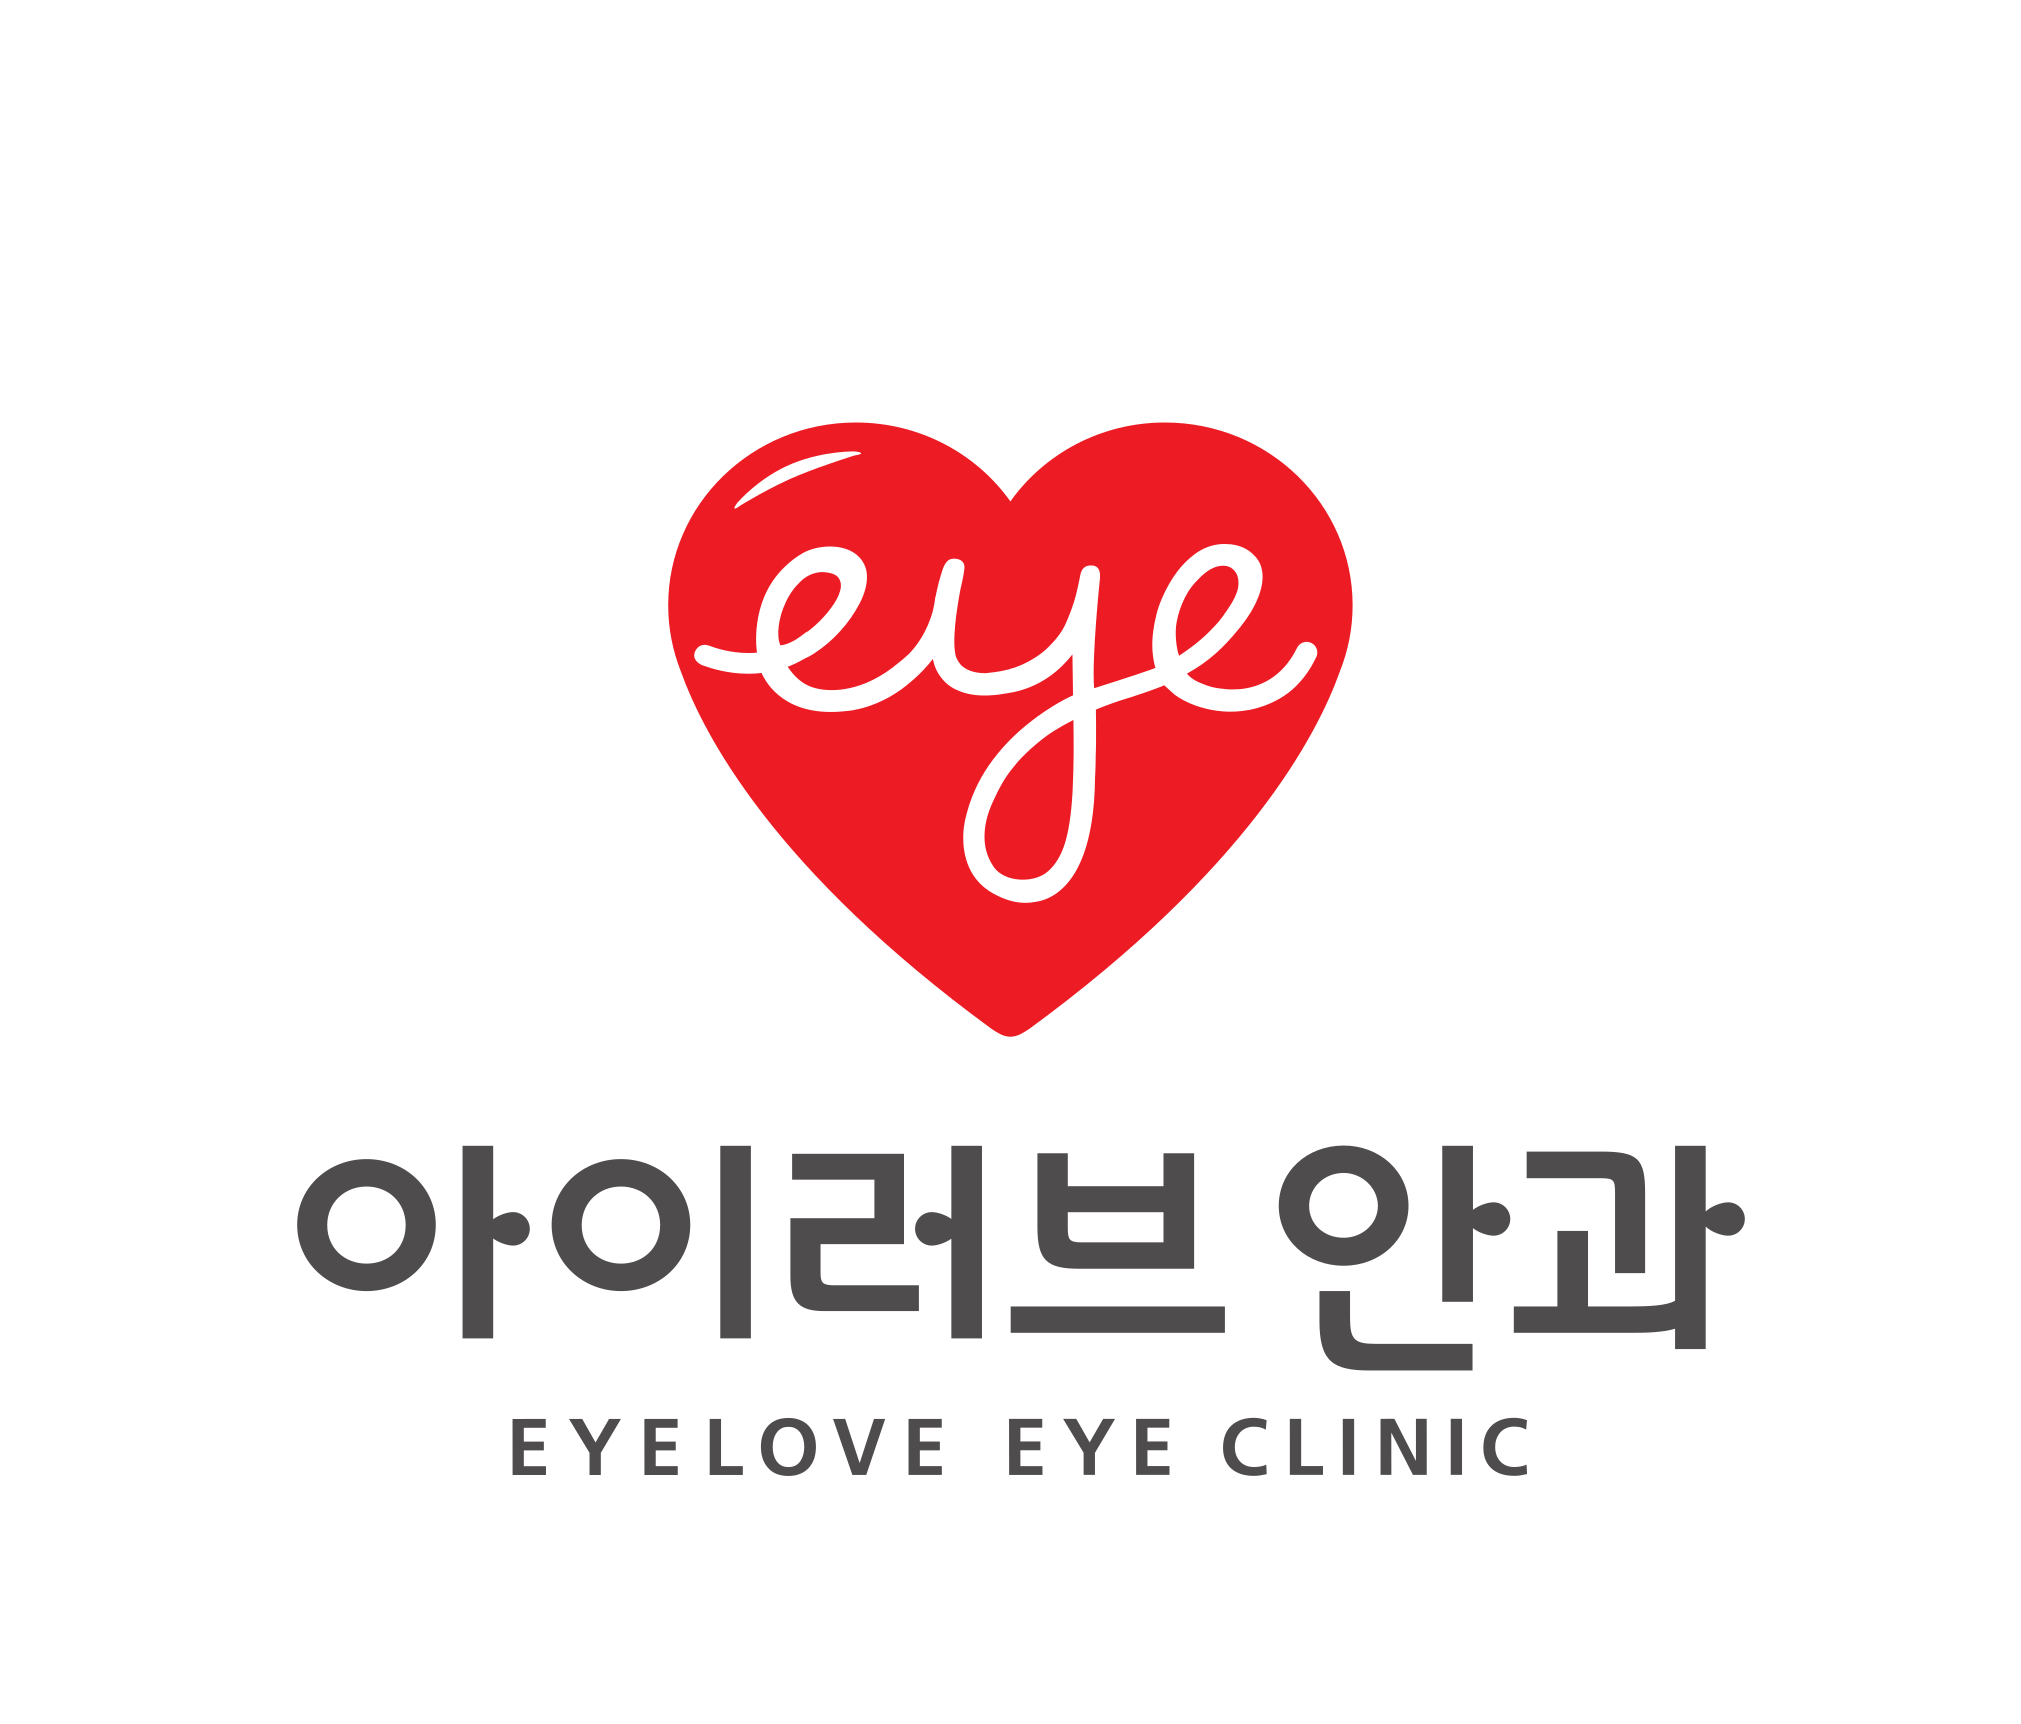 Eyelove Eye Clinic 정보 보기